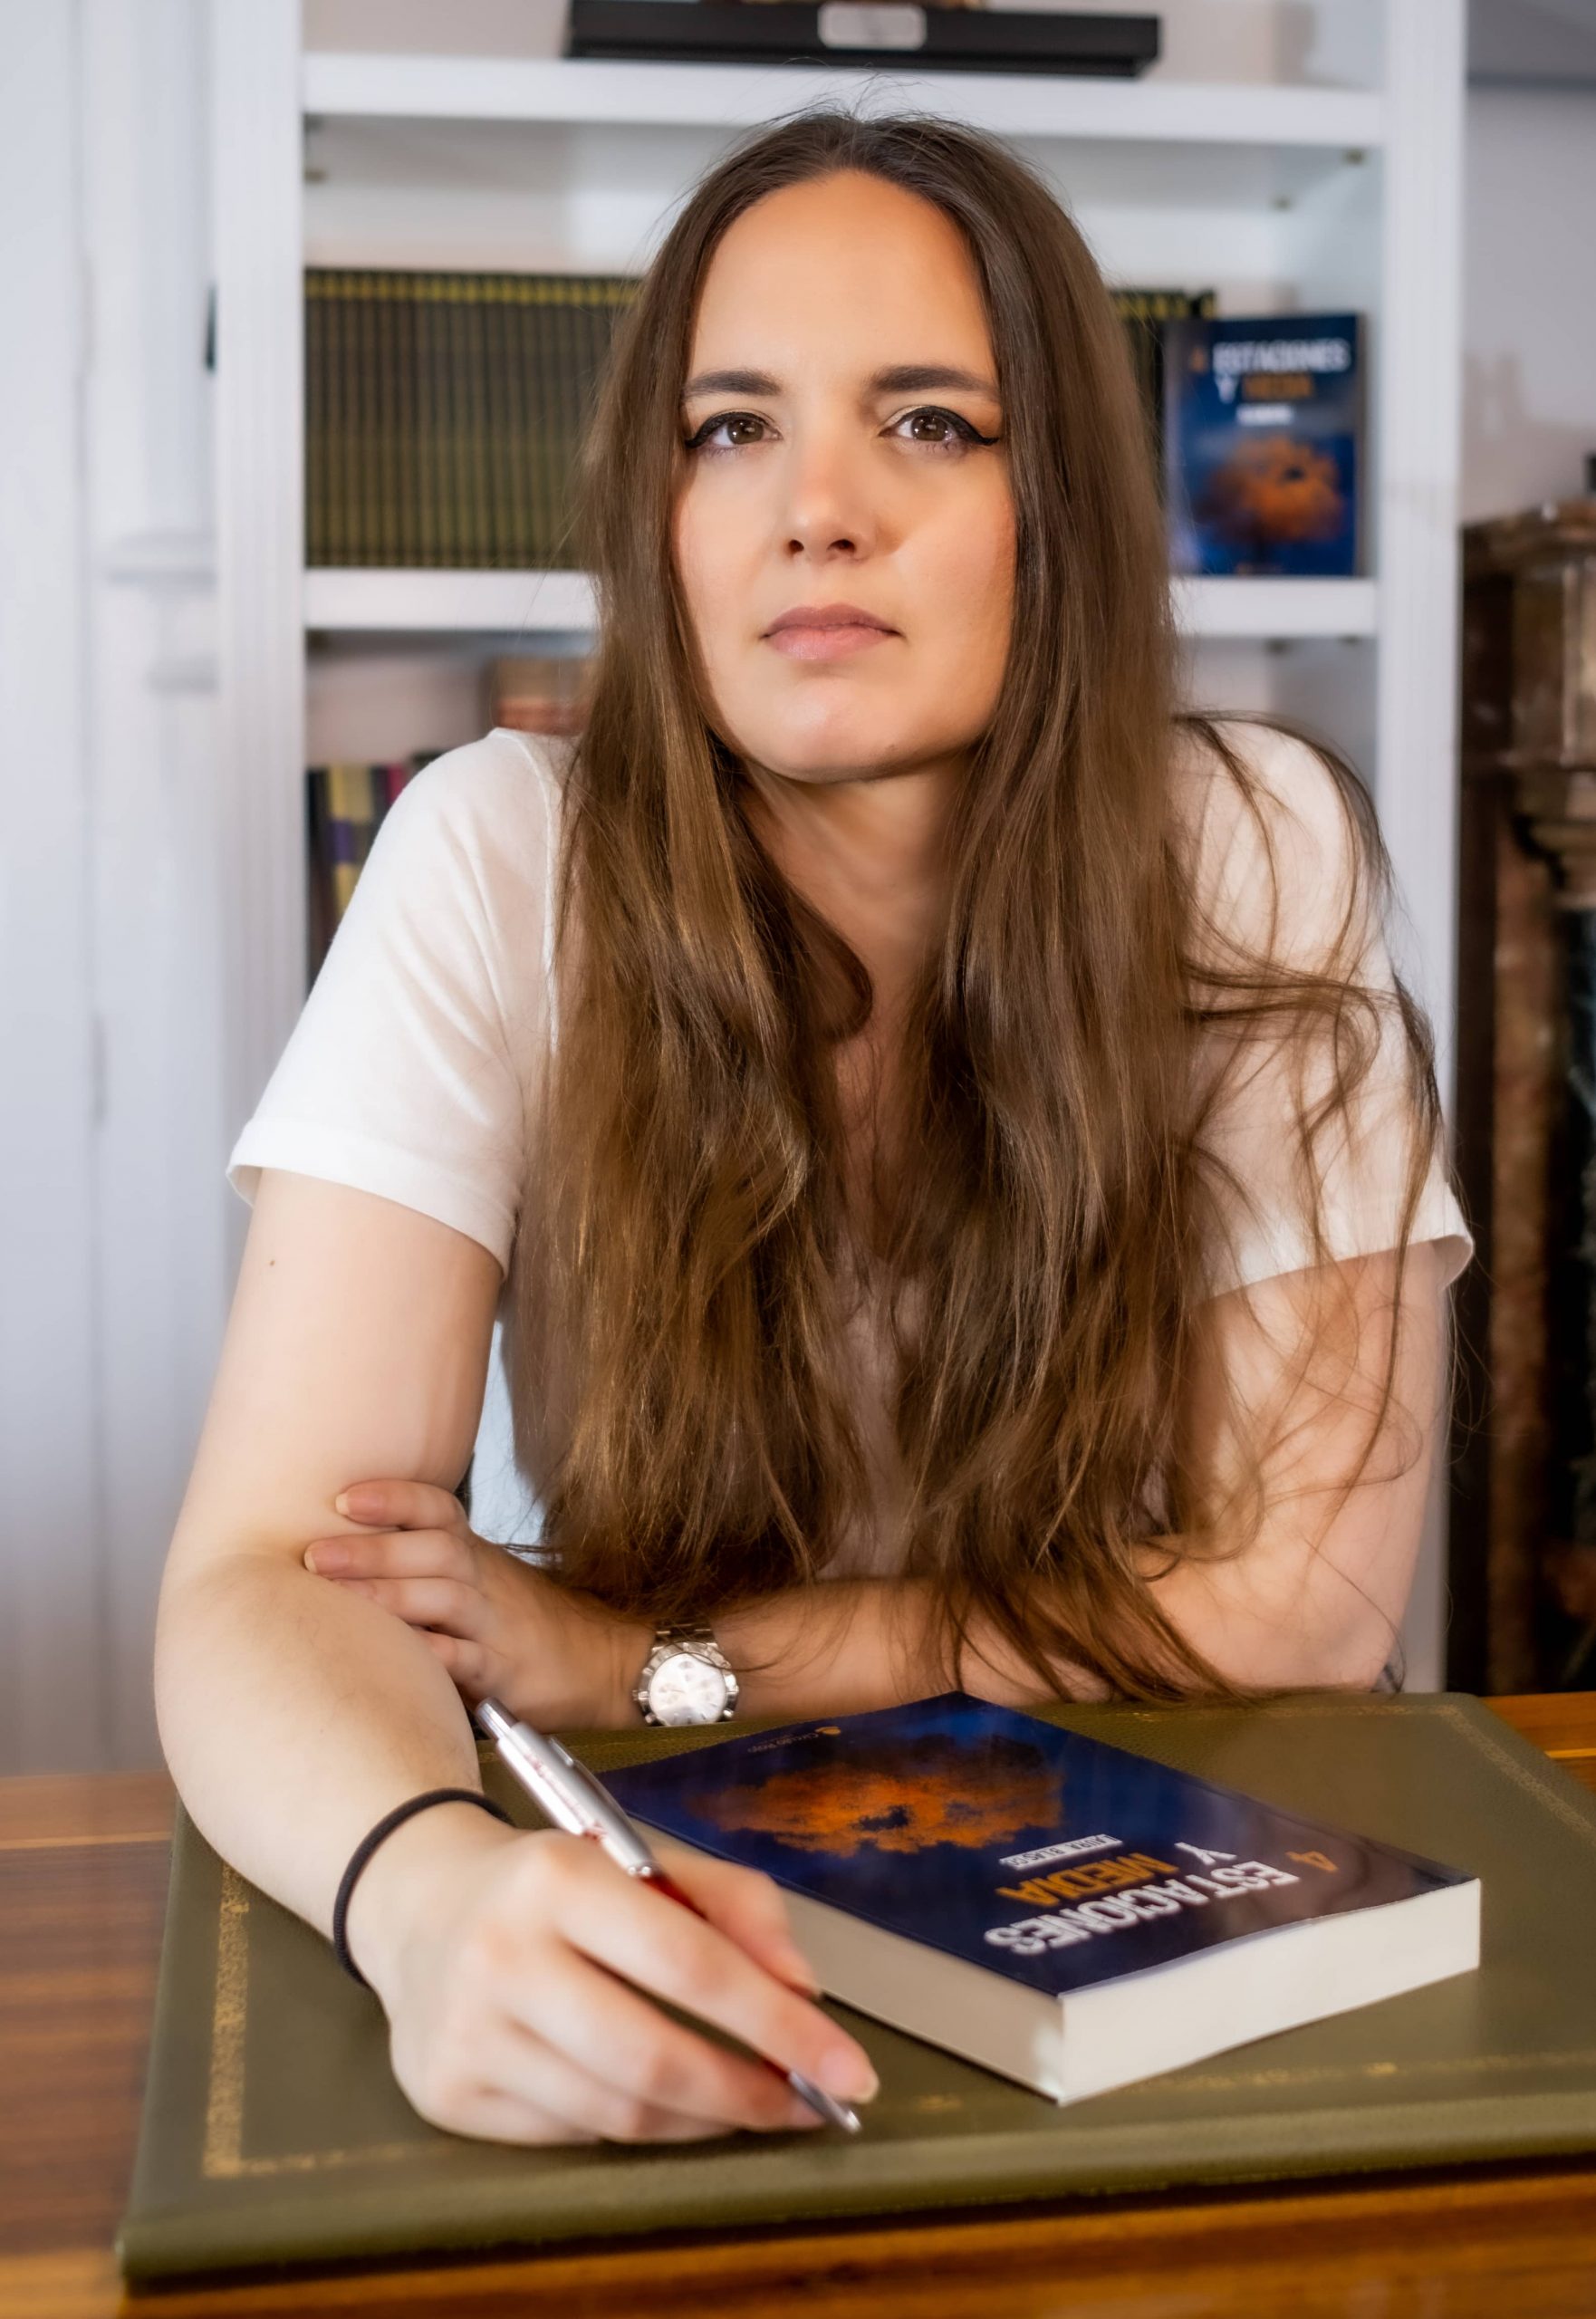 Descubrimos a la escritora Laura Blasco y su segunda novela “4 estaciones y media”